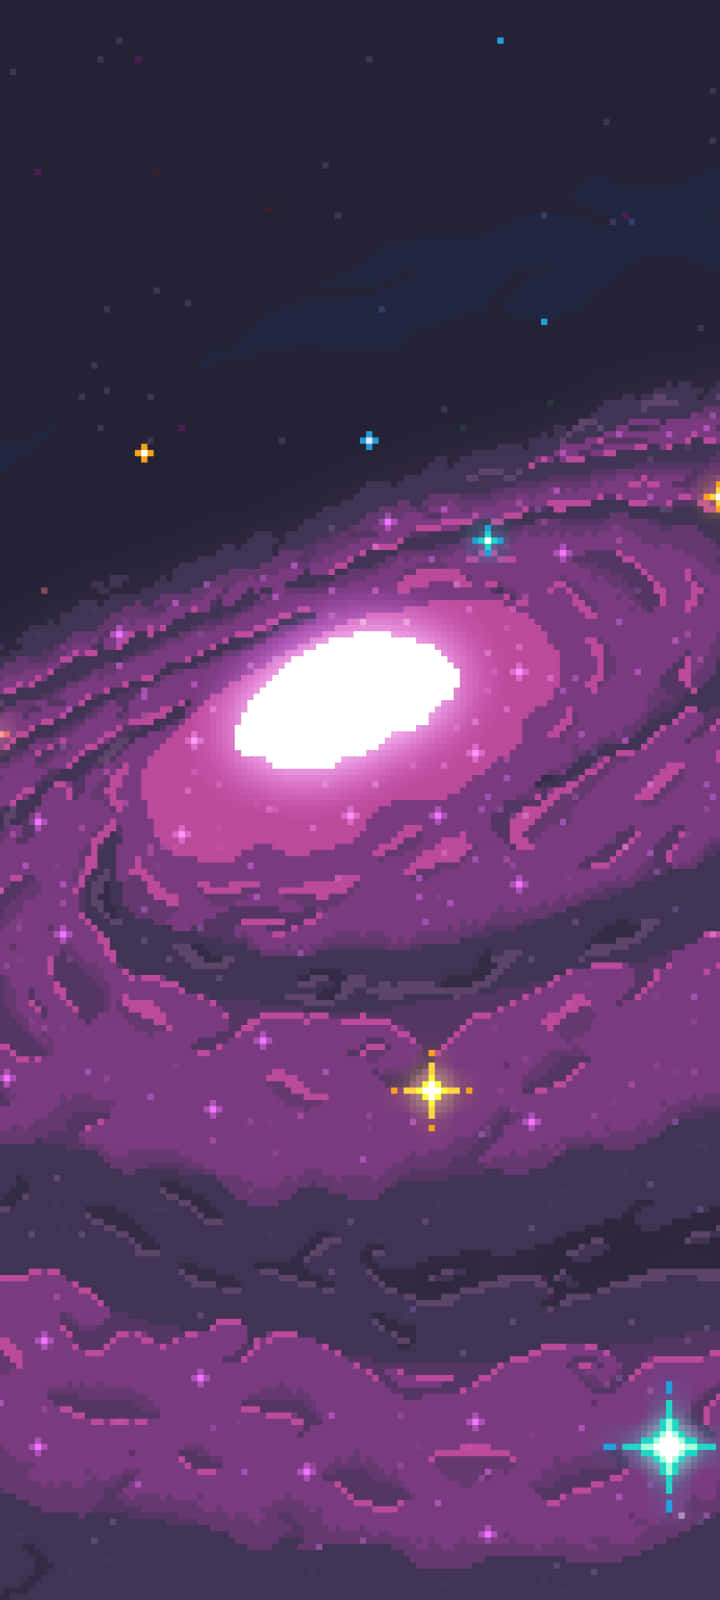 Pixelgalaxy - Galaxie Pixelkunst Wallpaper